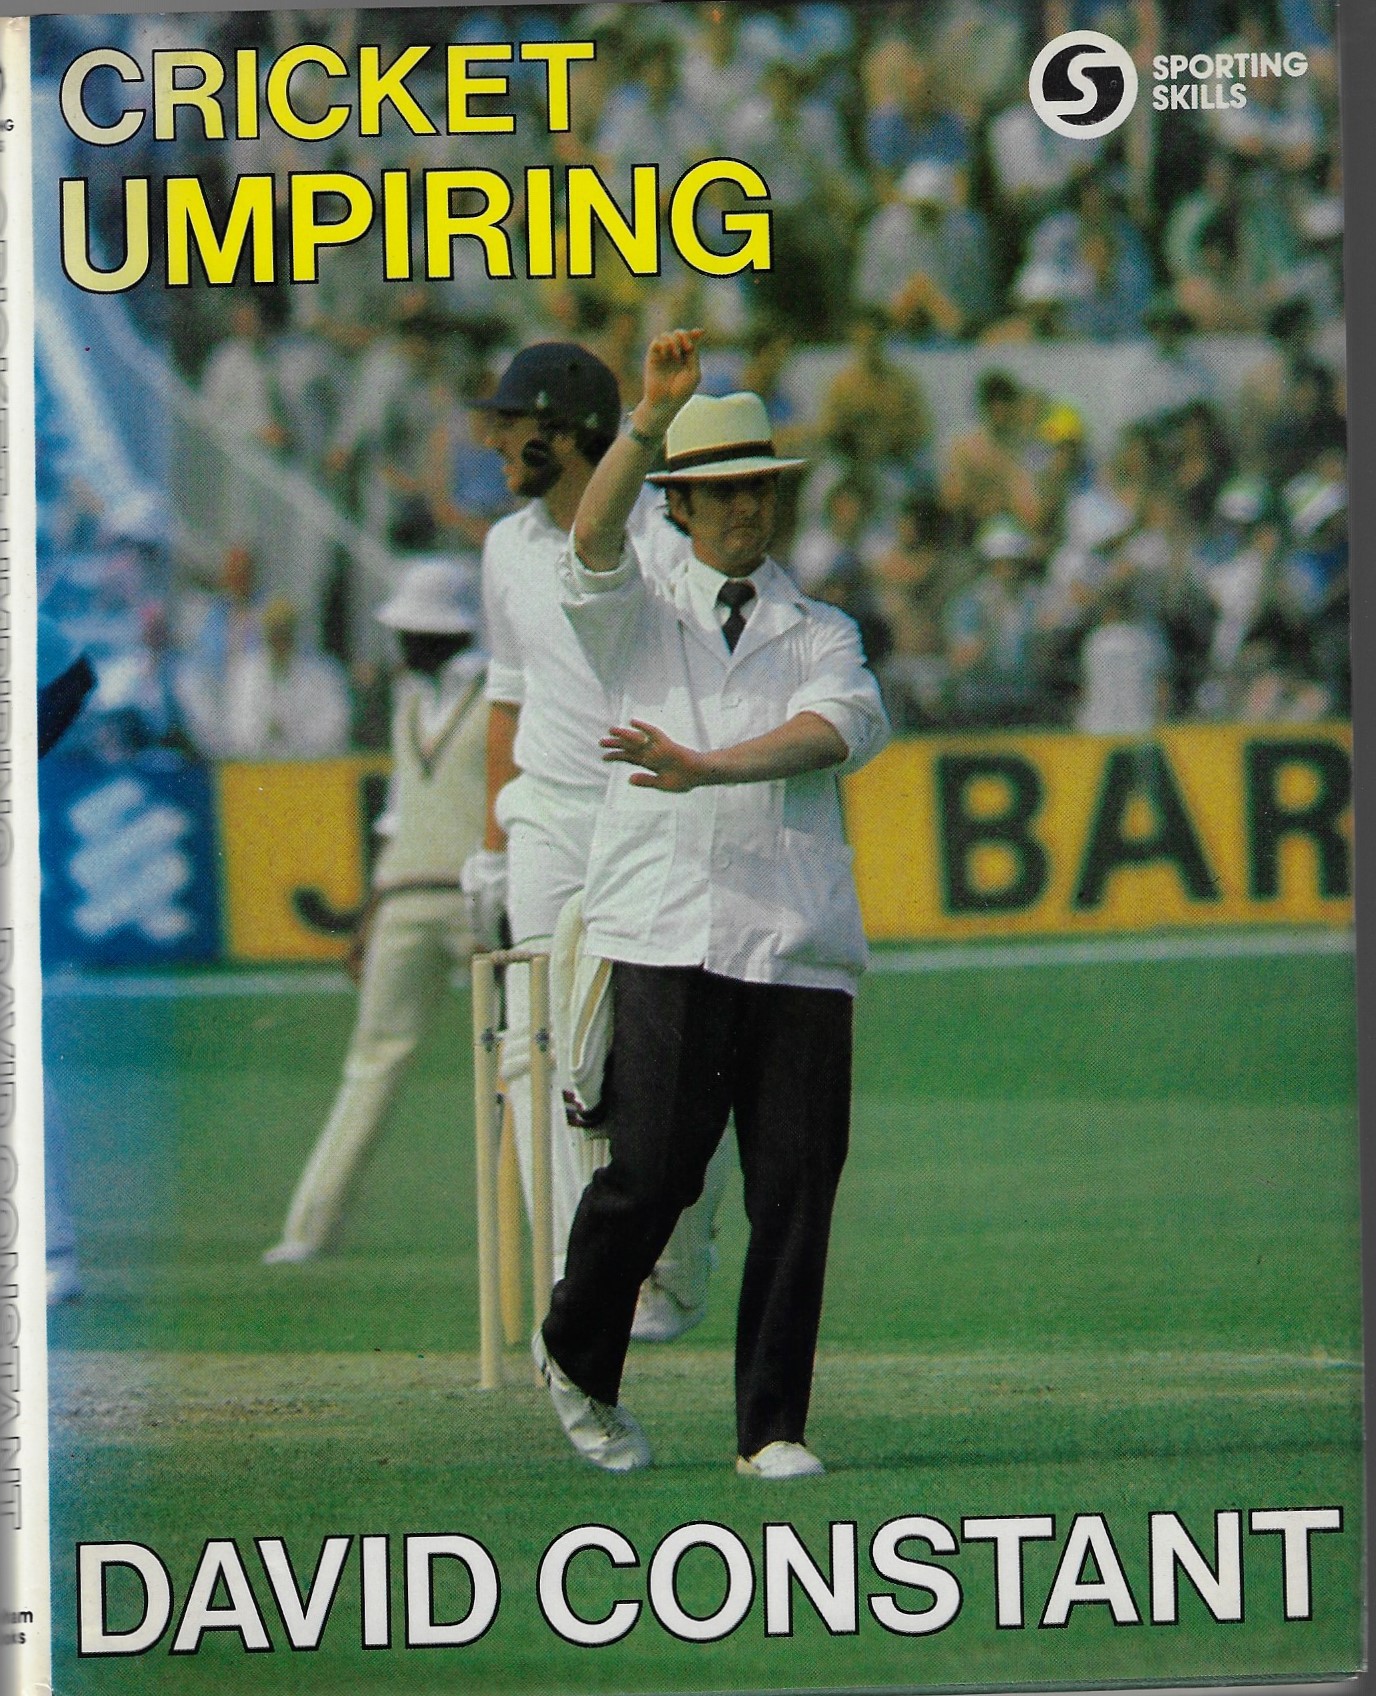 Constant, David - Cricket Umpiring -Sporting Skill Series